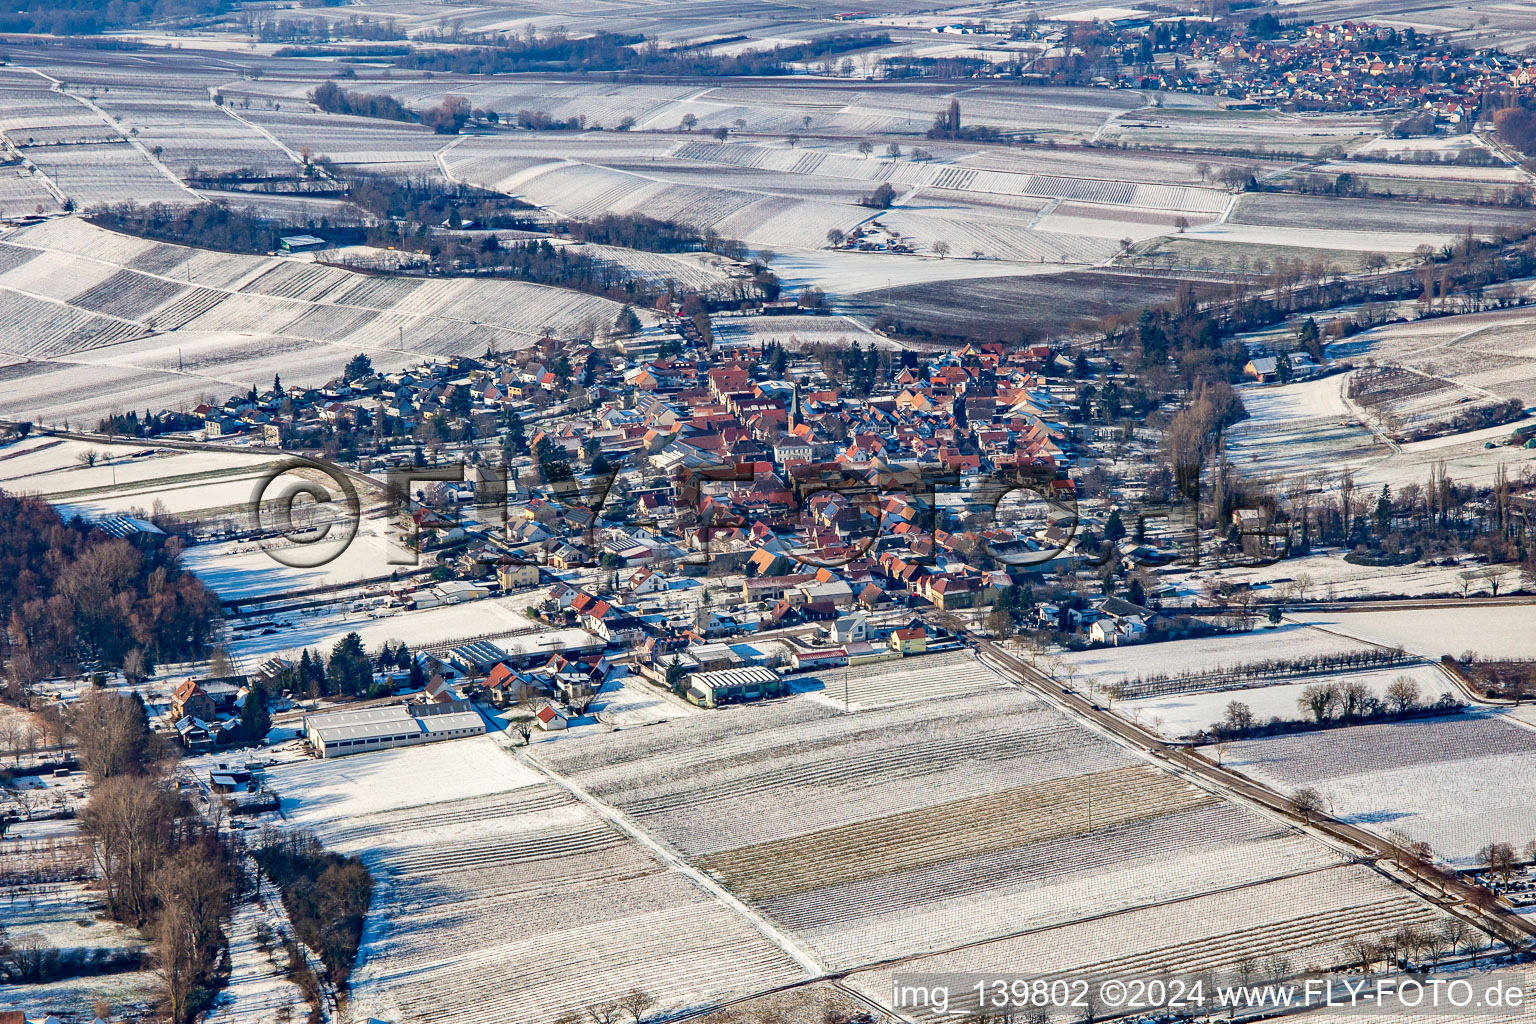 From the east in winter in the snow in the district Heuchelheim in Heuchelheim-Klingen in the state Rhineland-Palatinate, Germany